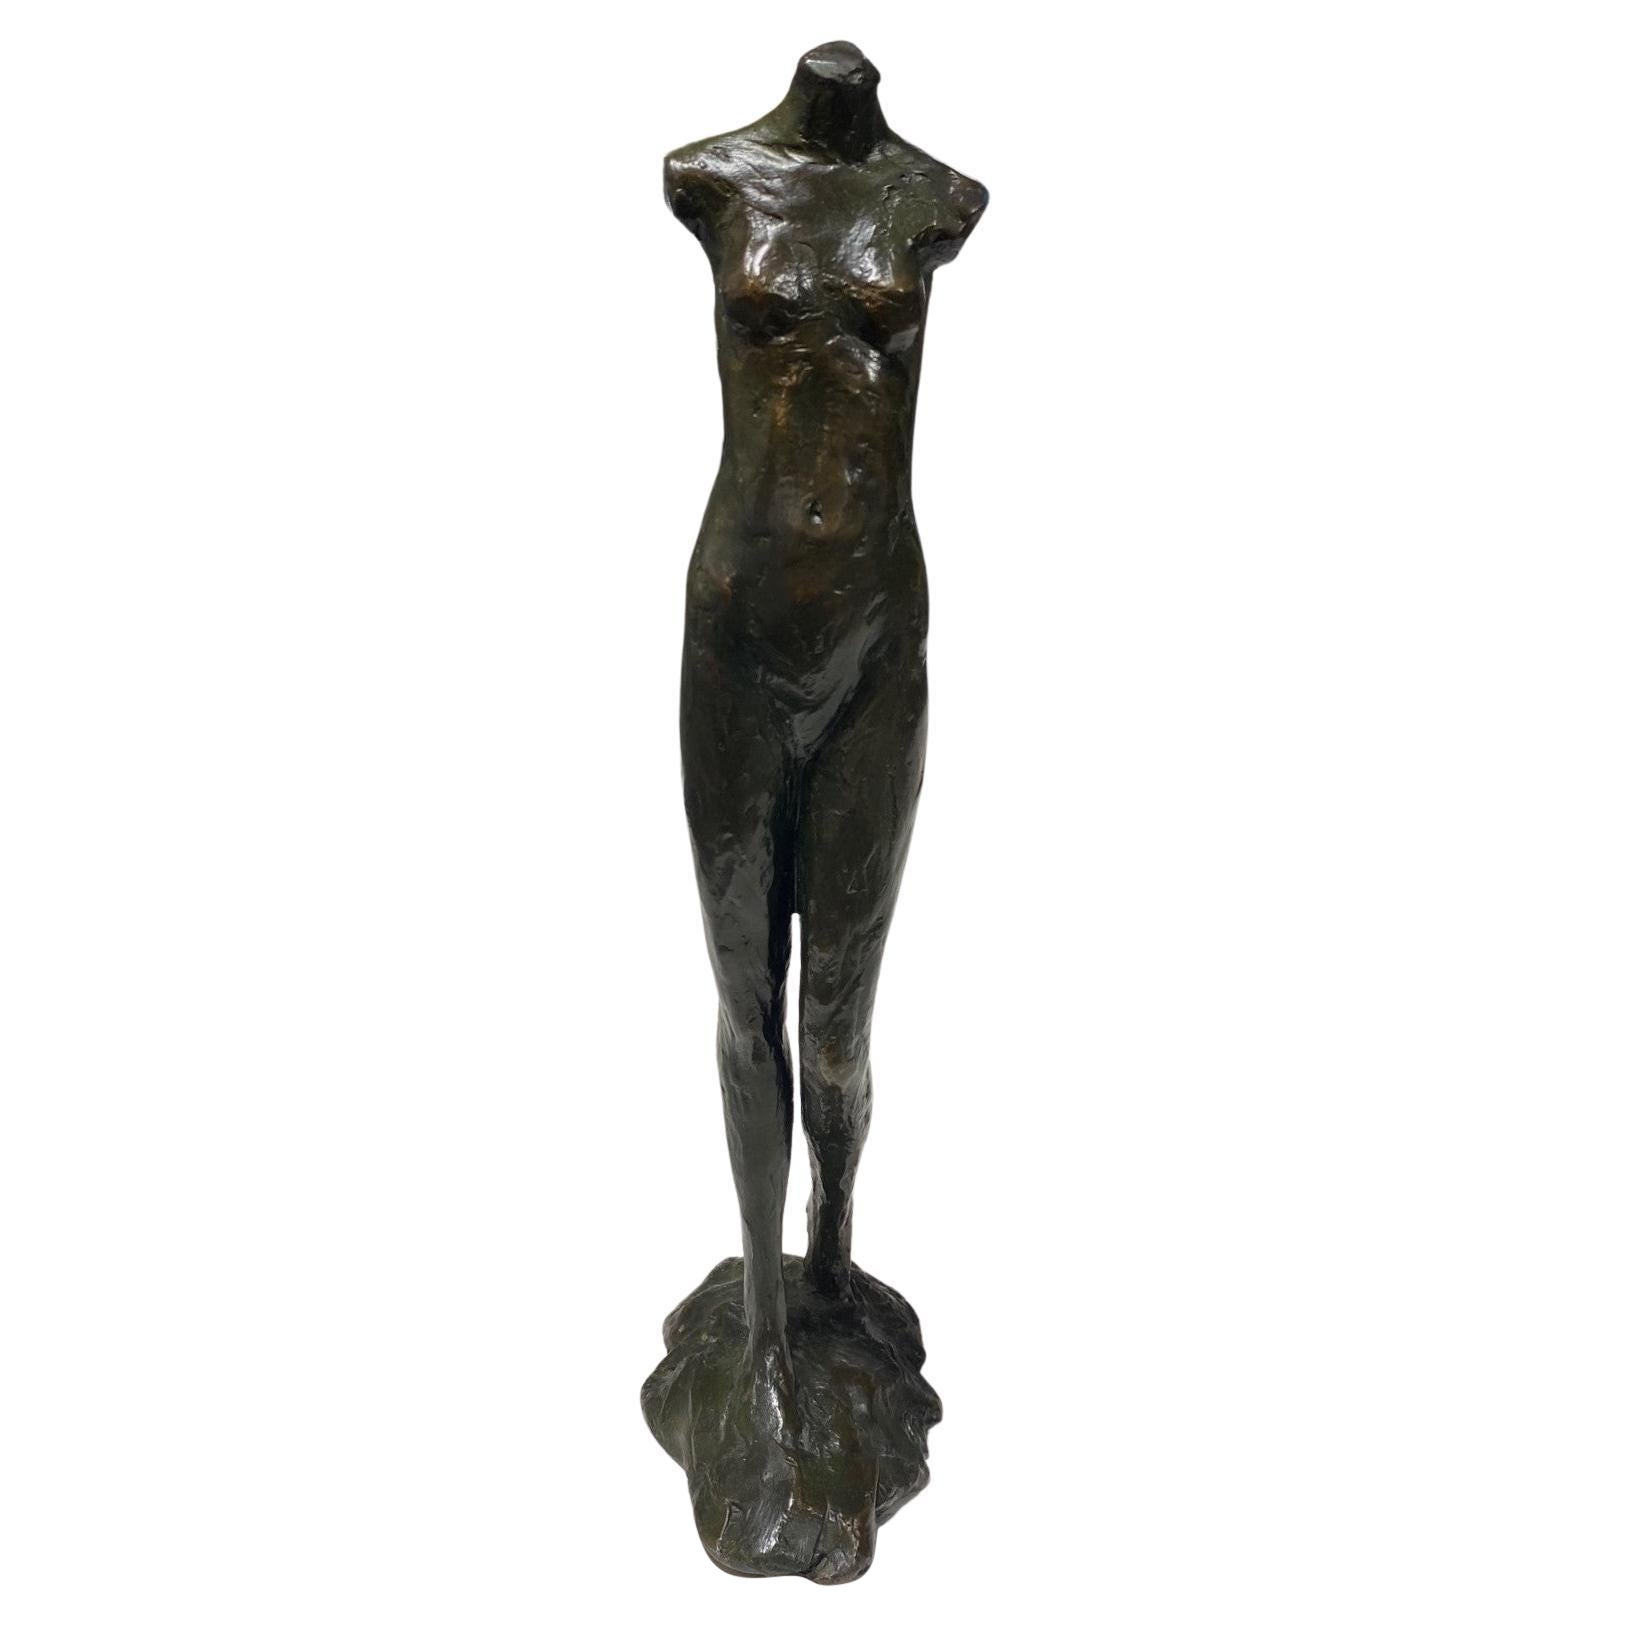 Figurative Bronze-Skulptur einer nackten Frau, Tom Corbin, signiert, limitierte Auflage